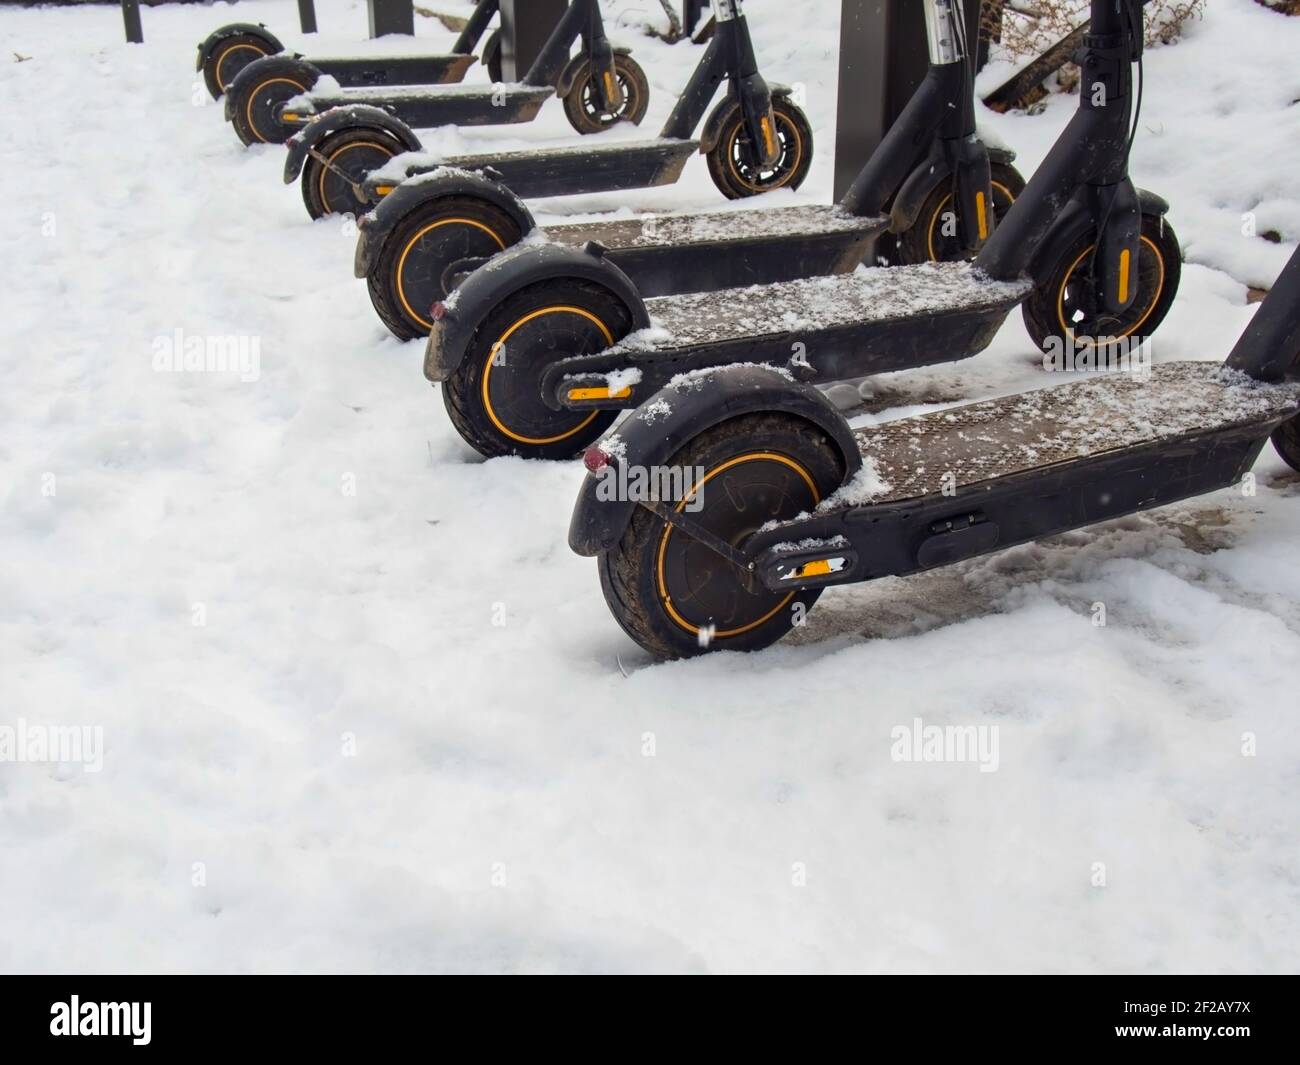 Transport urbain électrique: La rangée de lectures électriques pour monter des motos de scooter avec des accumulateurs garés dans la neige en hiver. Banque D'Images